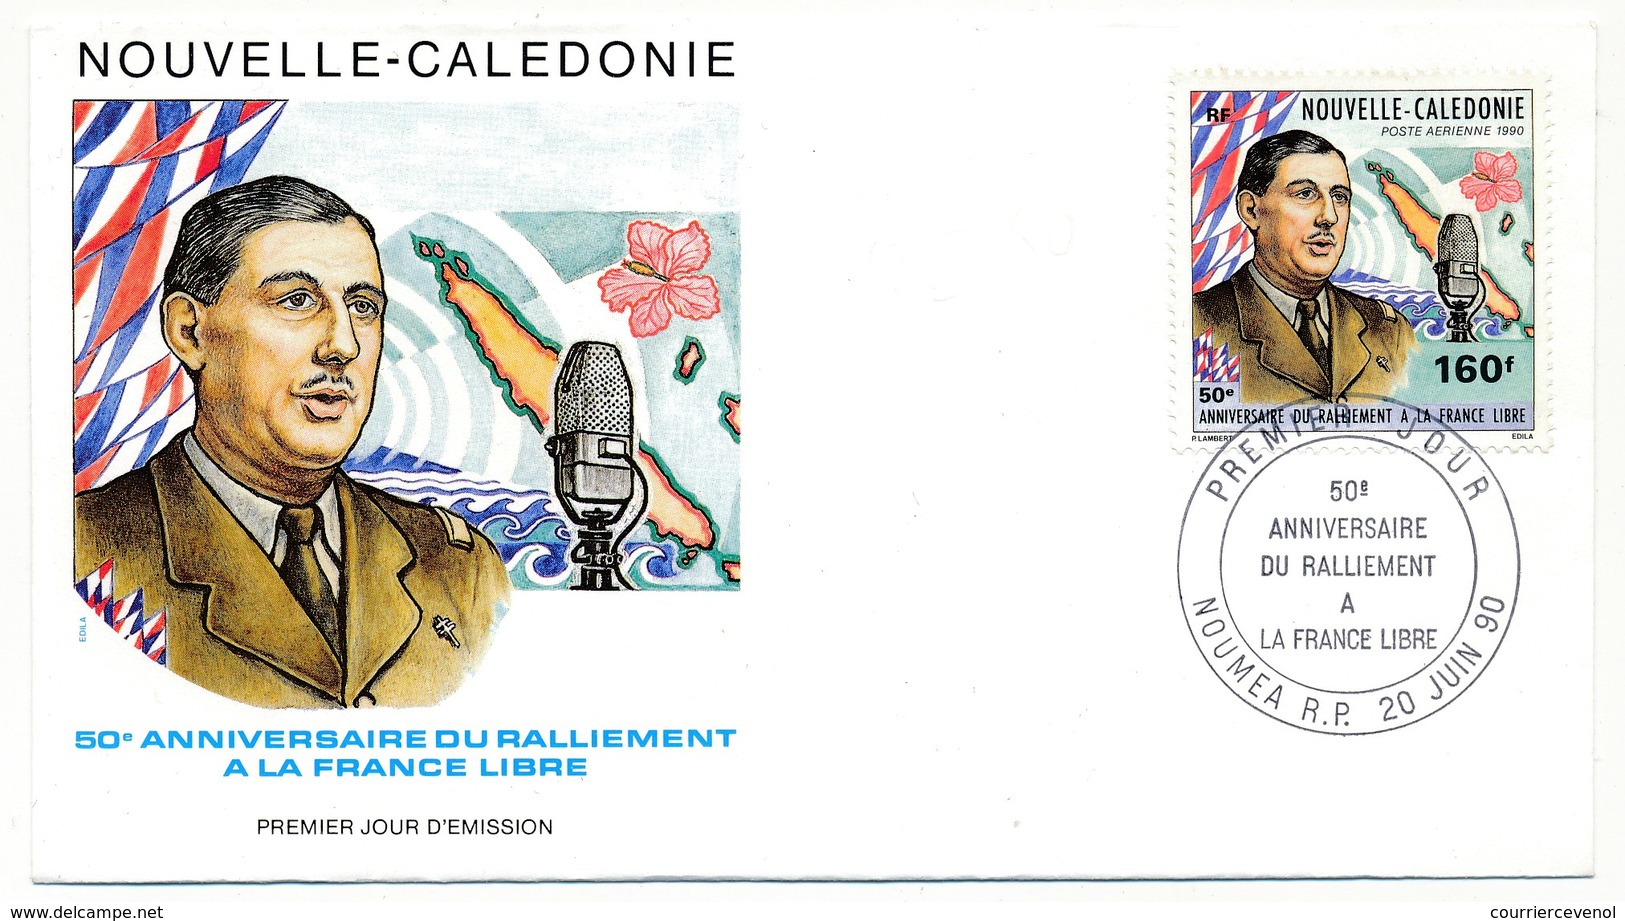 NOUVELLE CALEDONIE -  Enveloppe FDC - 50eme Anniversaire Du Ralliement à La France Libre - NOUMEA 20/06/1990 - De Gaulle (Generaal)